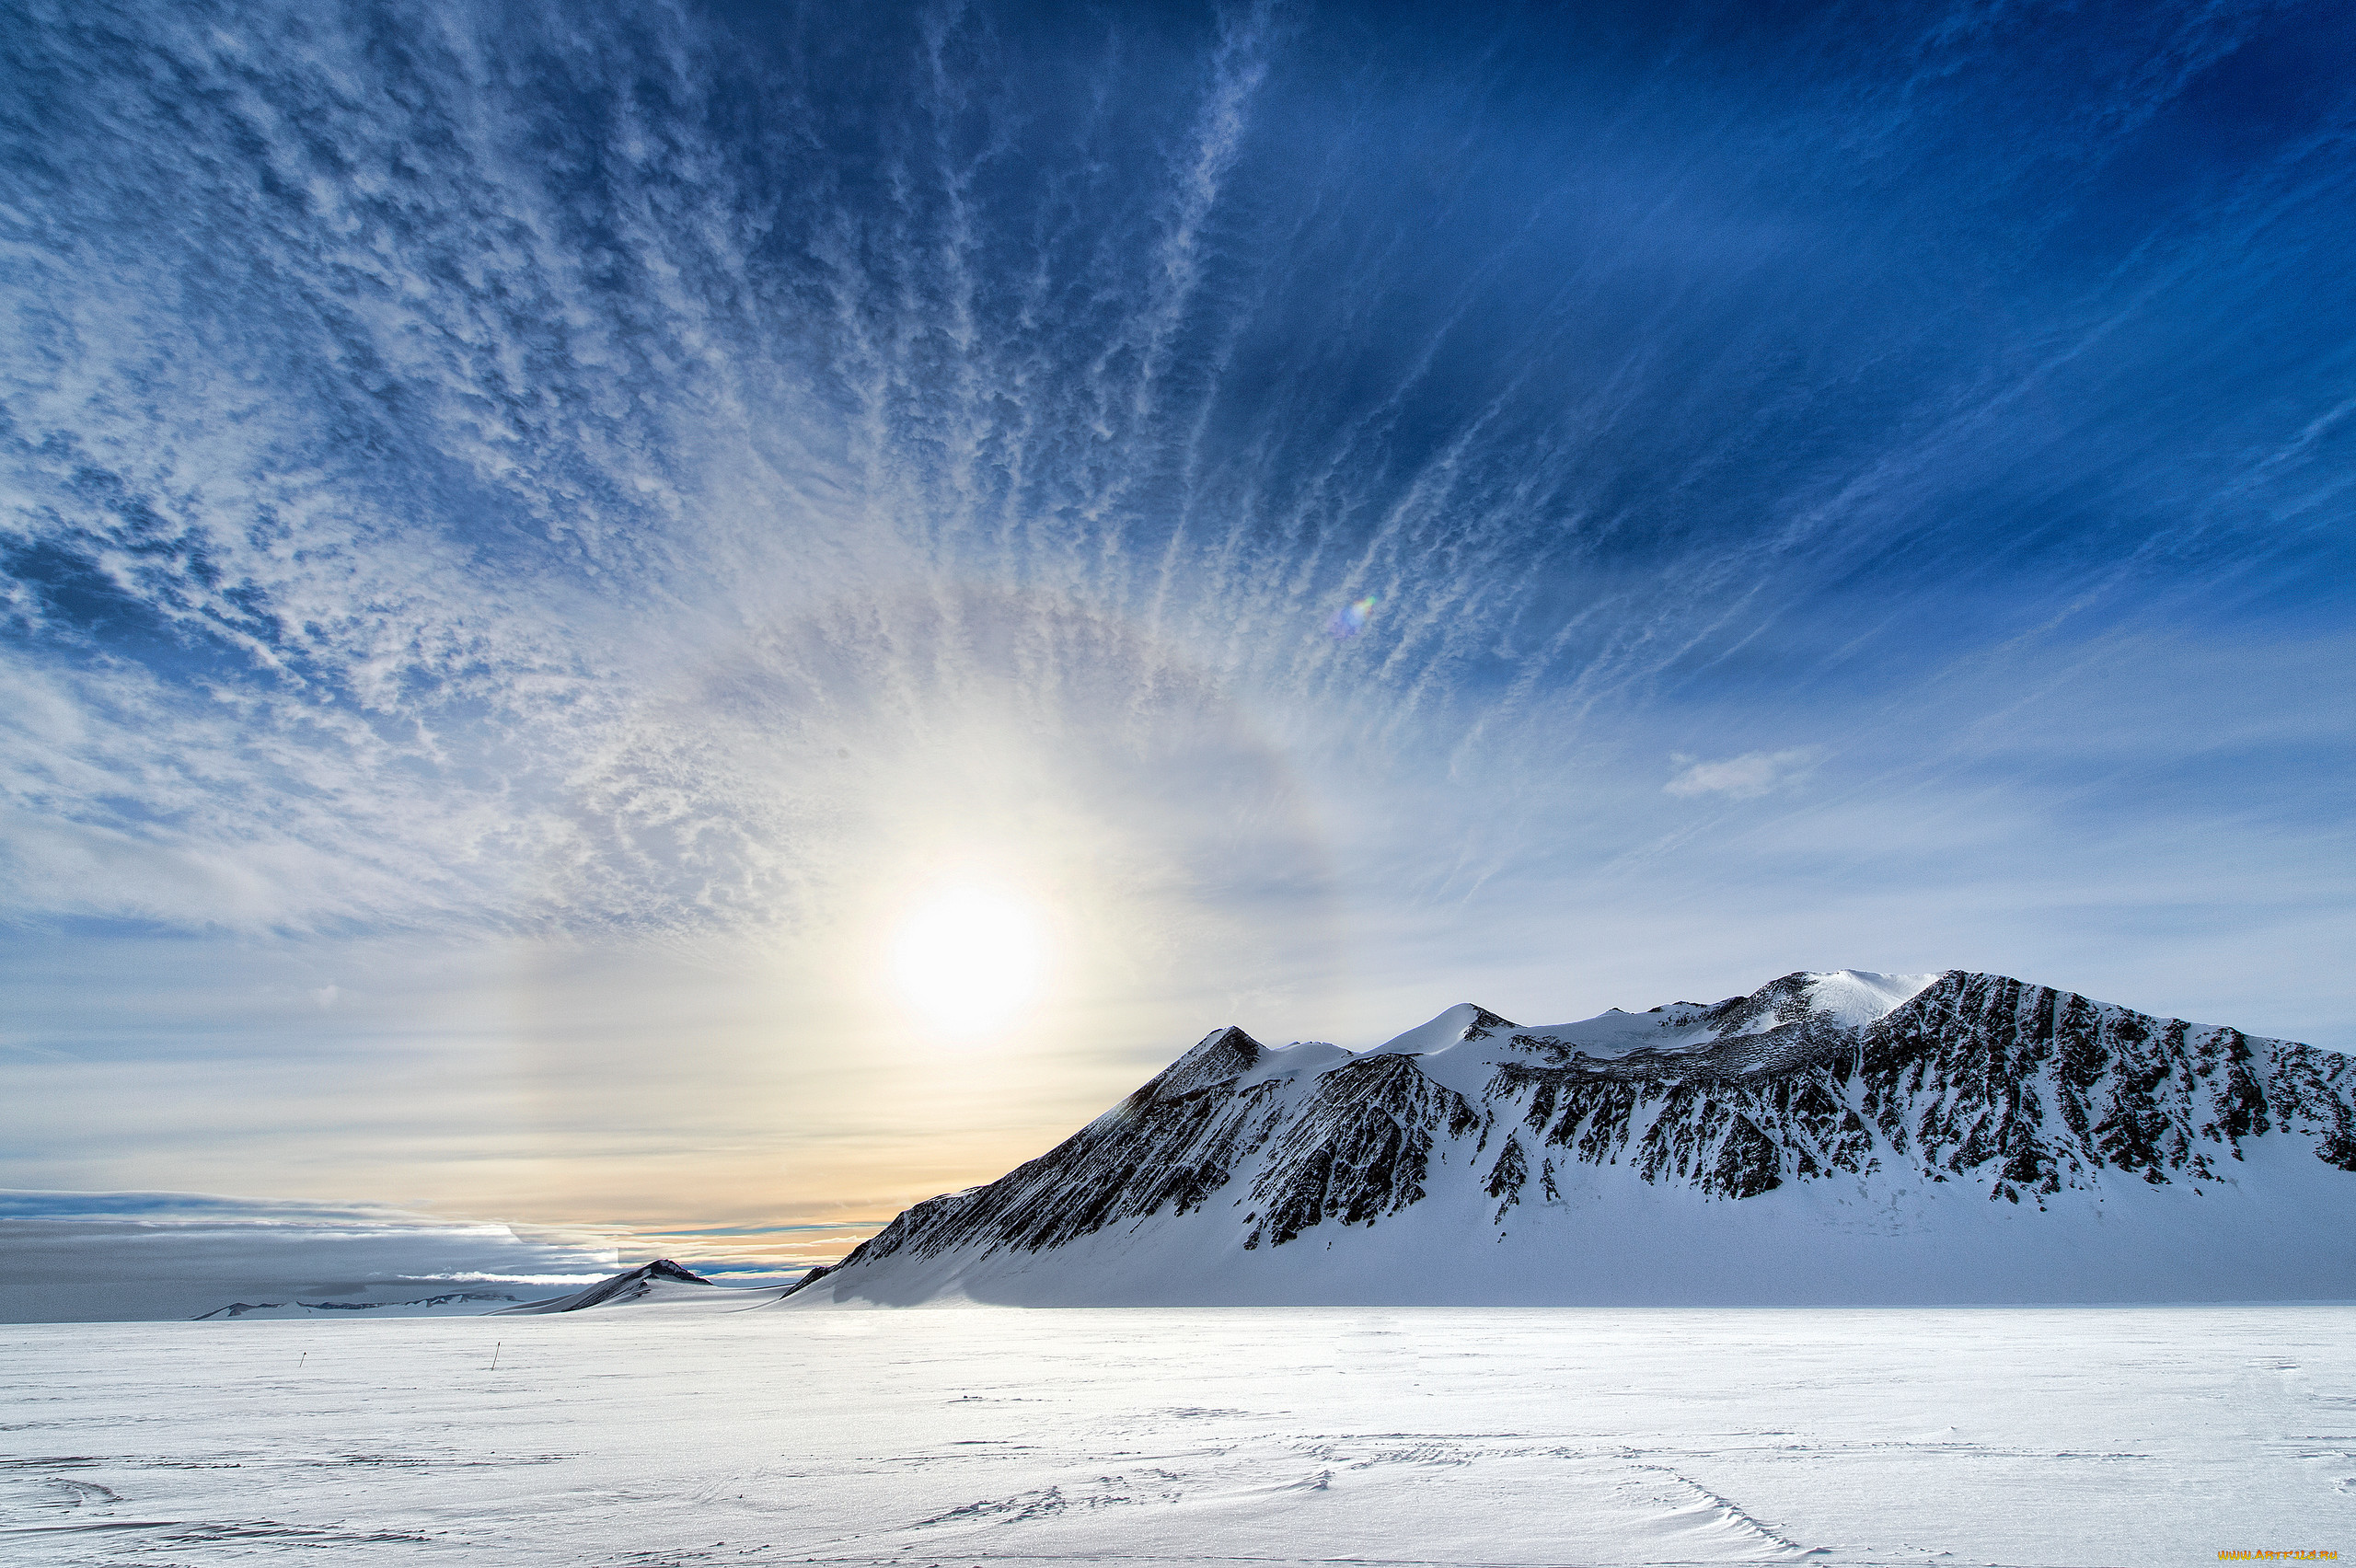 Южный полюс день и ночь. Полярное плато в Антарктиде. Северный полюс Арктика и Антарктика. Арктика Антарктика Антарктида. Северный полюс, Арктика и Южный полюс, Антарктида.